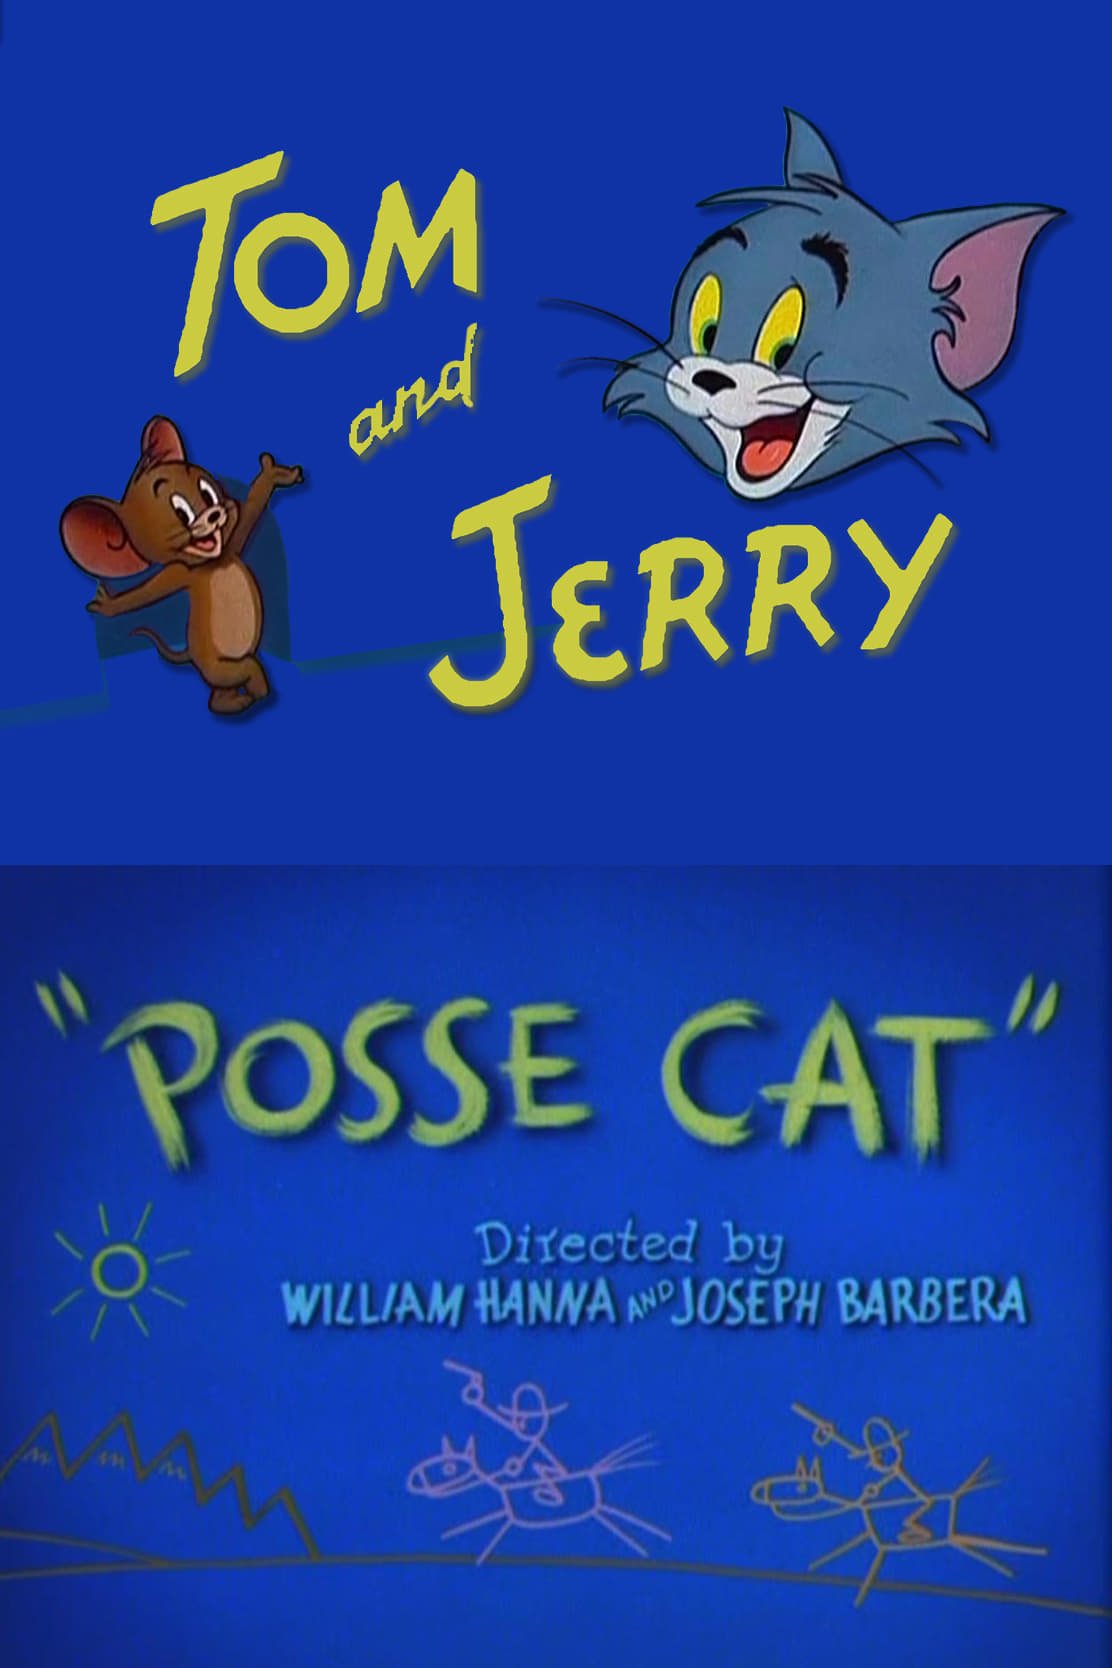 Posse Cat (1954)